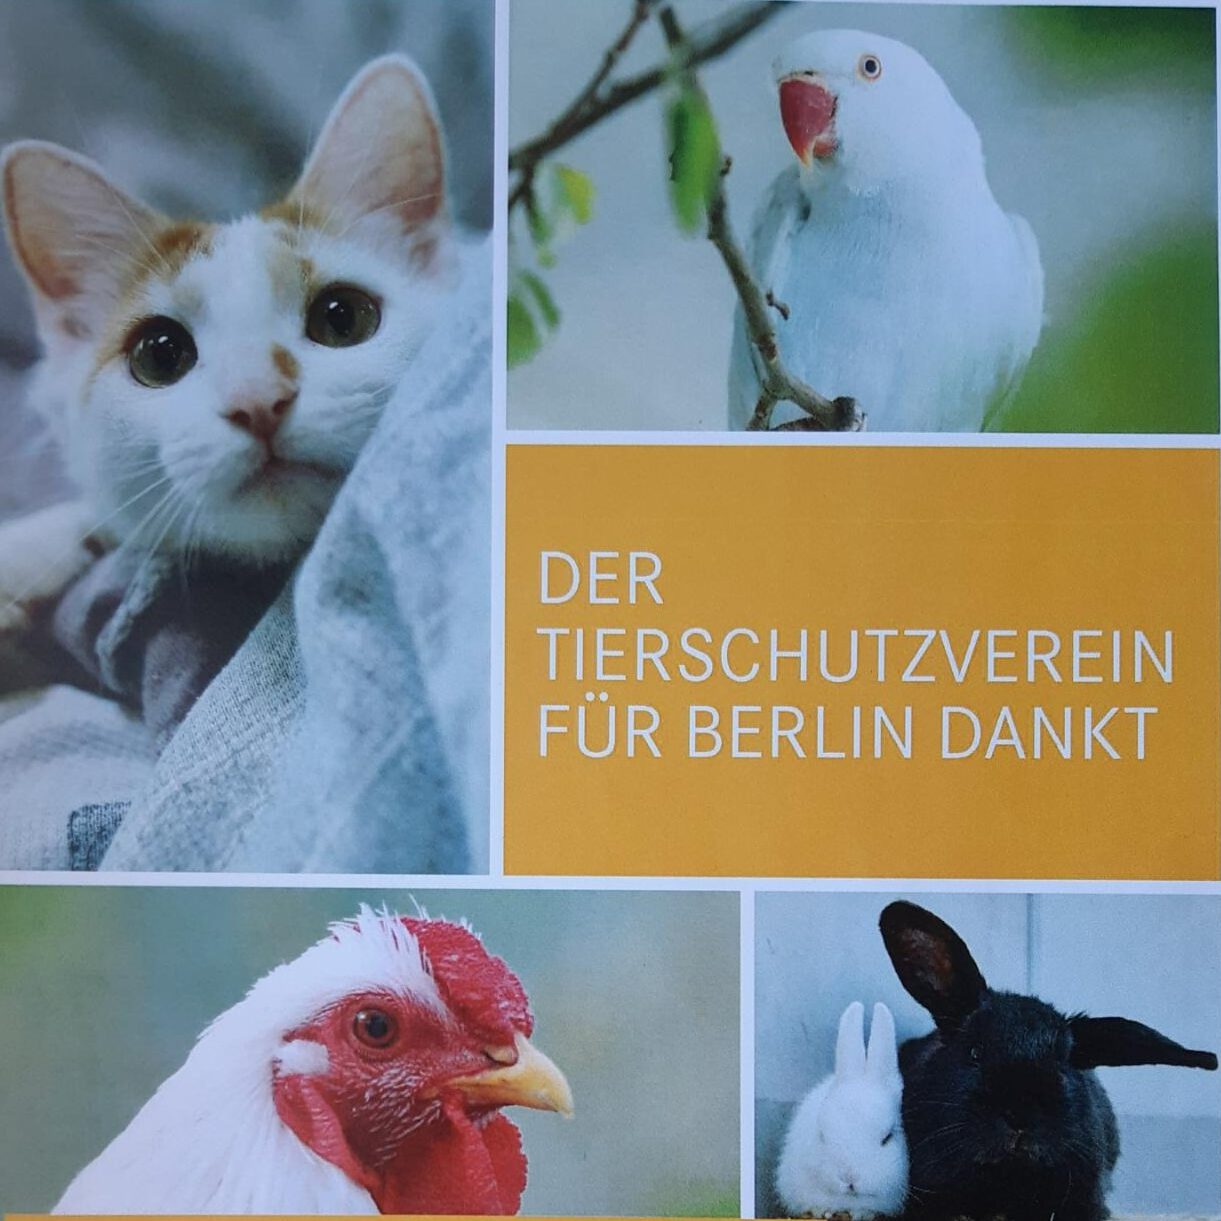 Der Tierschutzverein für Berlin Dankt